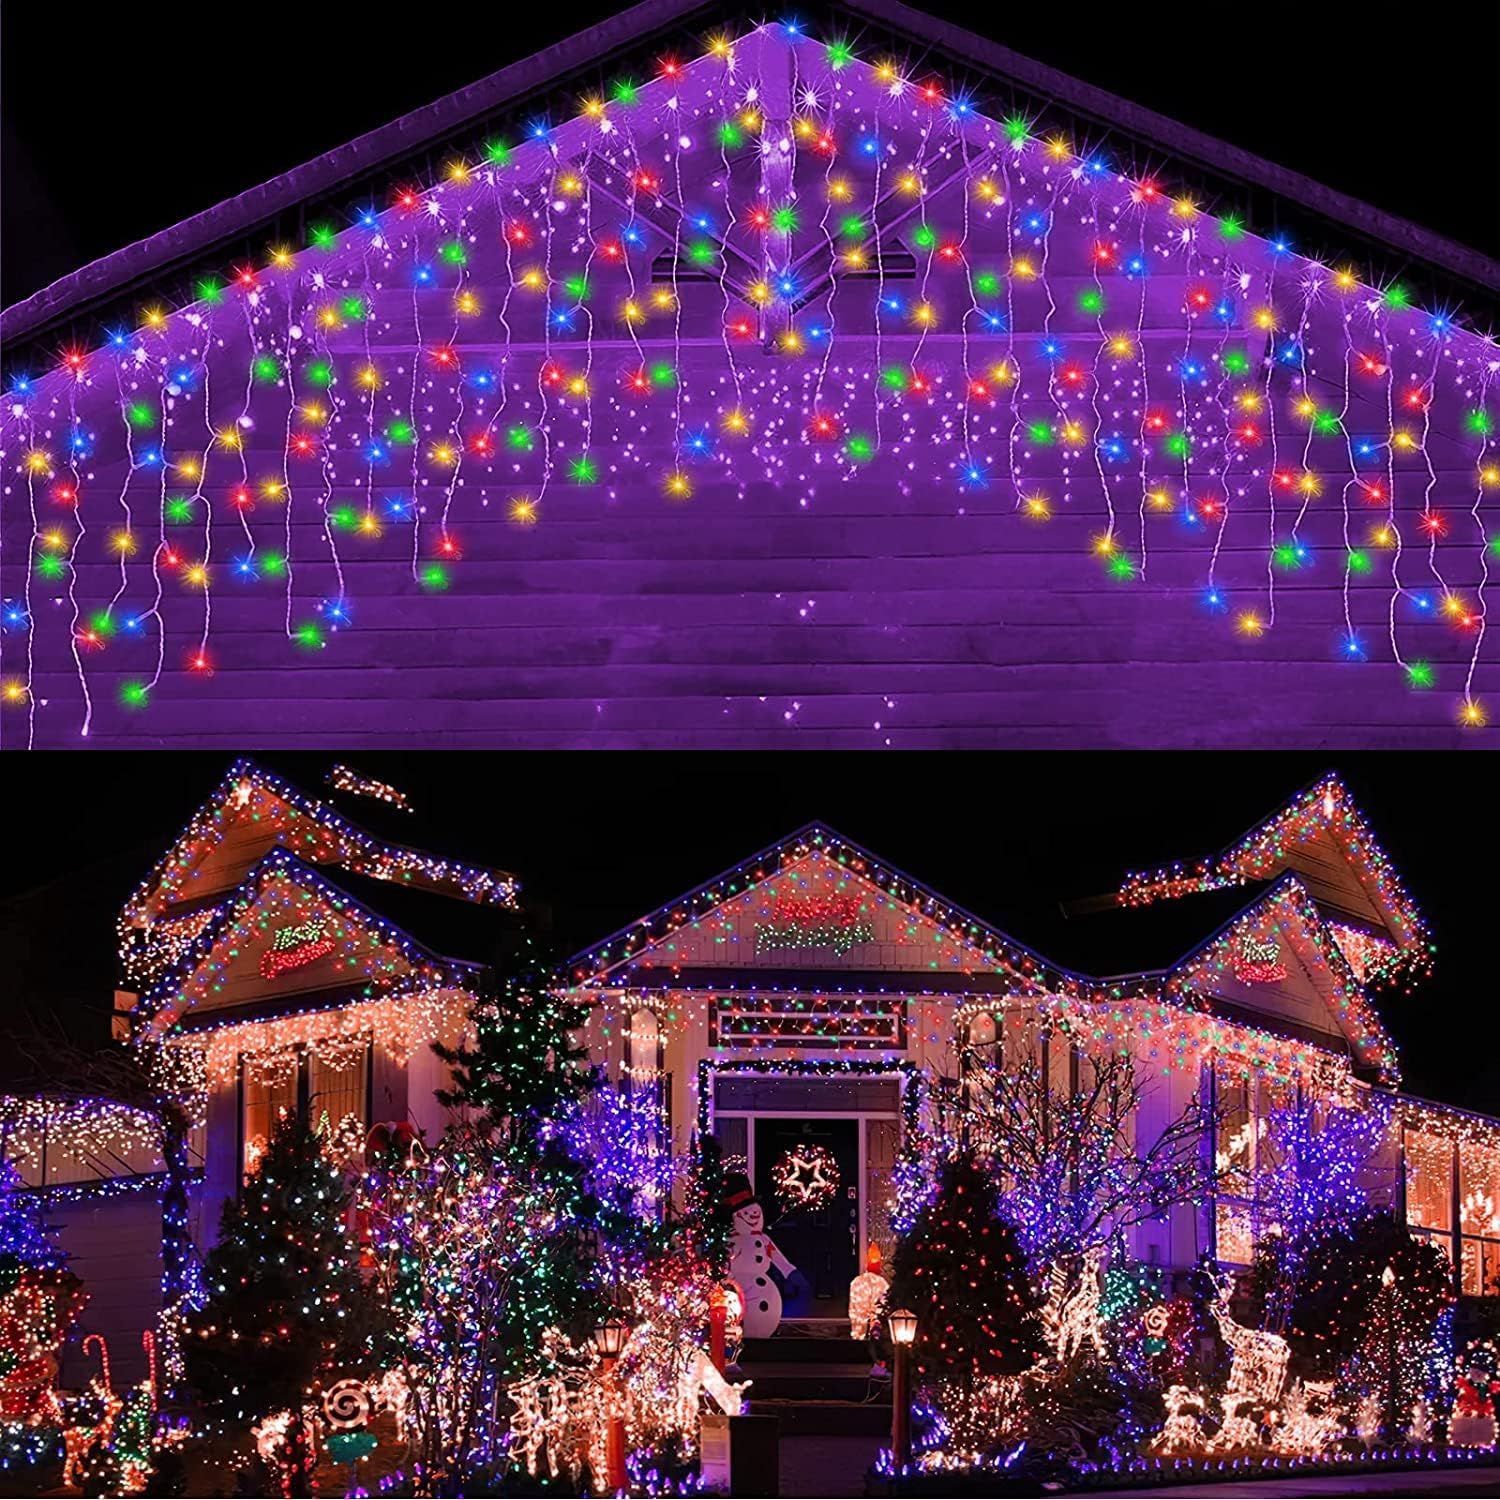 ソーラー式 つららライト10M 400球 LEDイルミネーションライトソーラー ベランダ ライト クリスマス 飾り 窓飾り 屋外防水 フェアリーライト 電飾パーティー 結婚式 庭対応 誕生日 アウトドア ガーデンライト